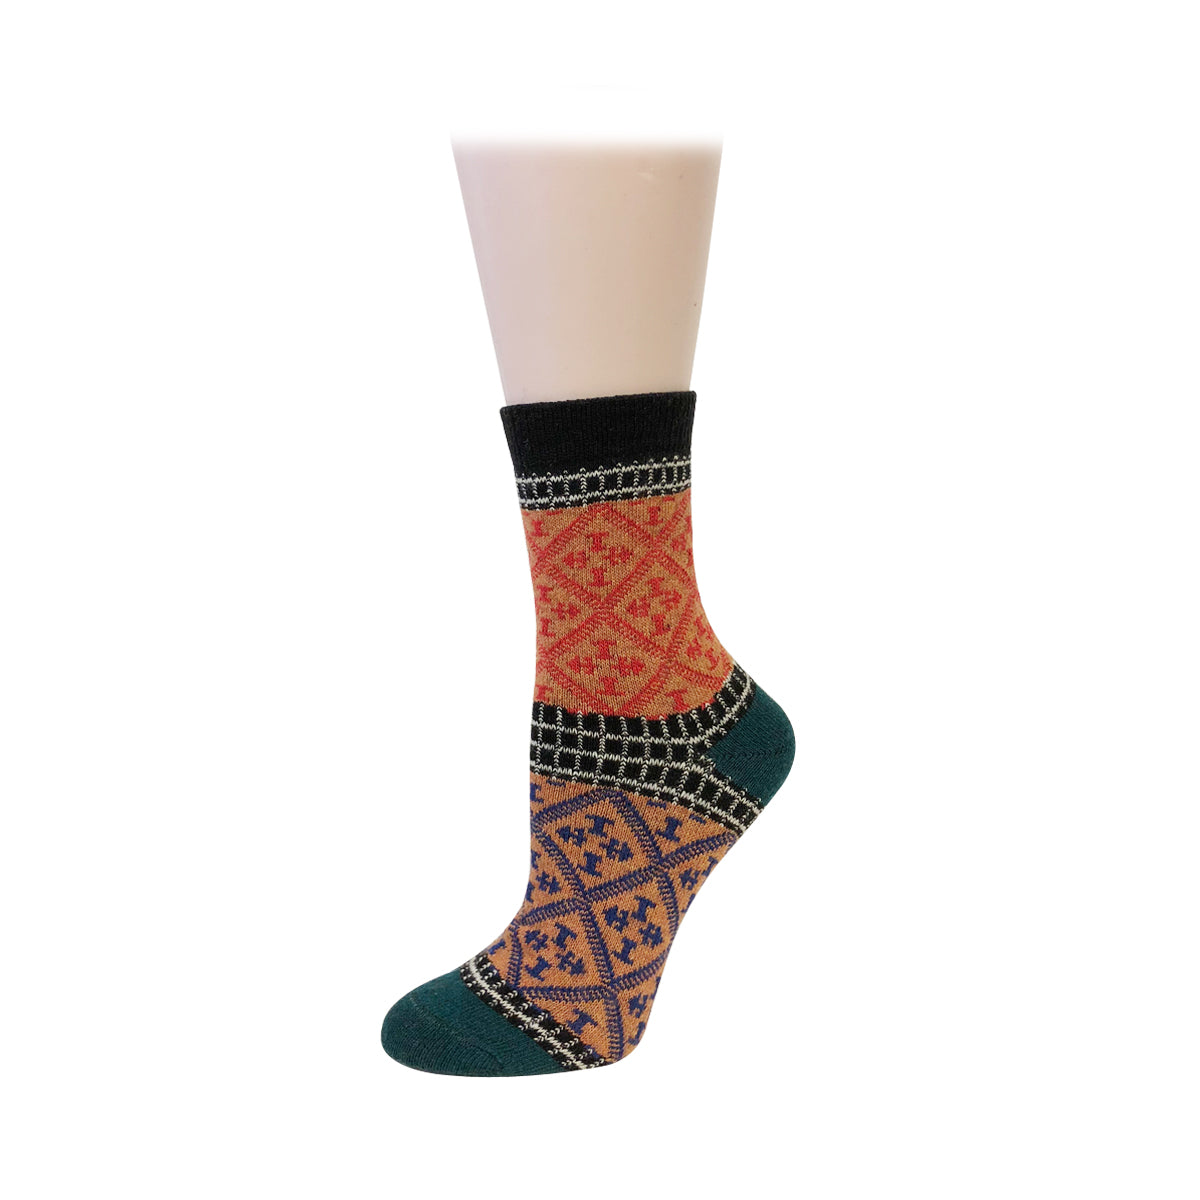 WrapablesÂ® Women's Thick Winter Warm Wool Socks (Set of 5)